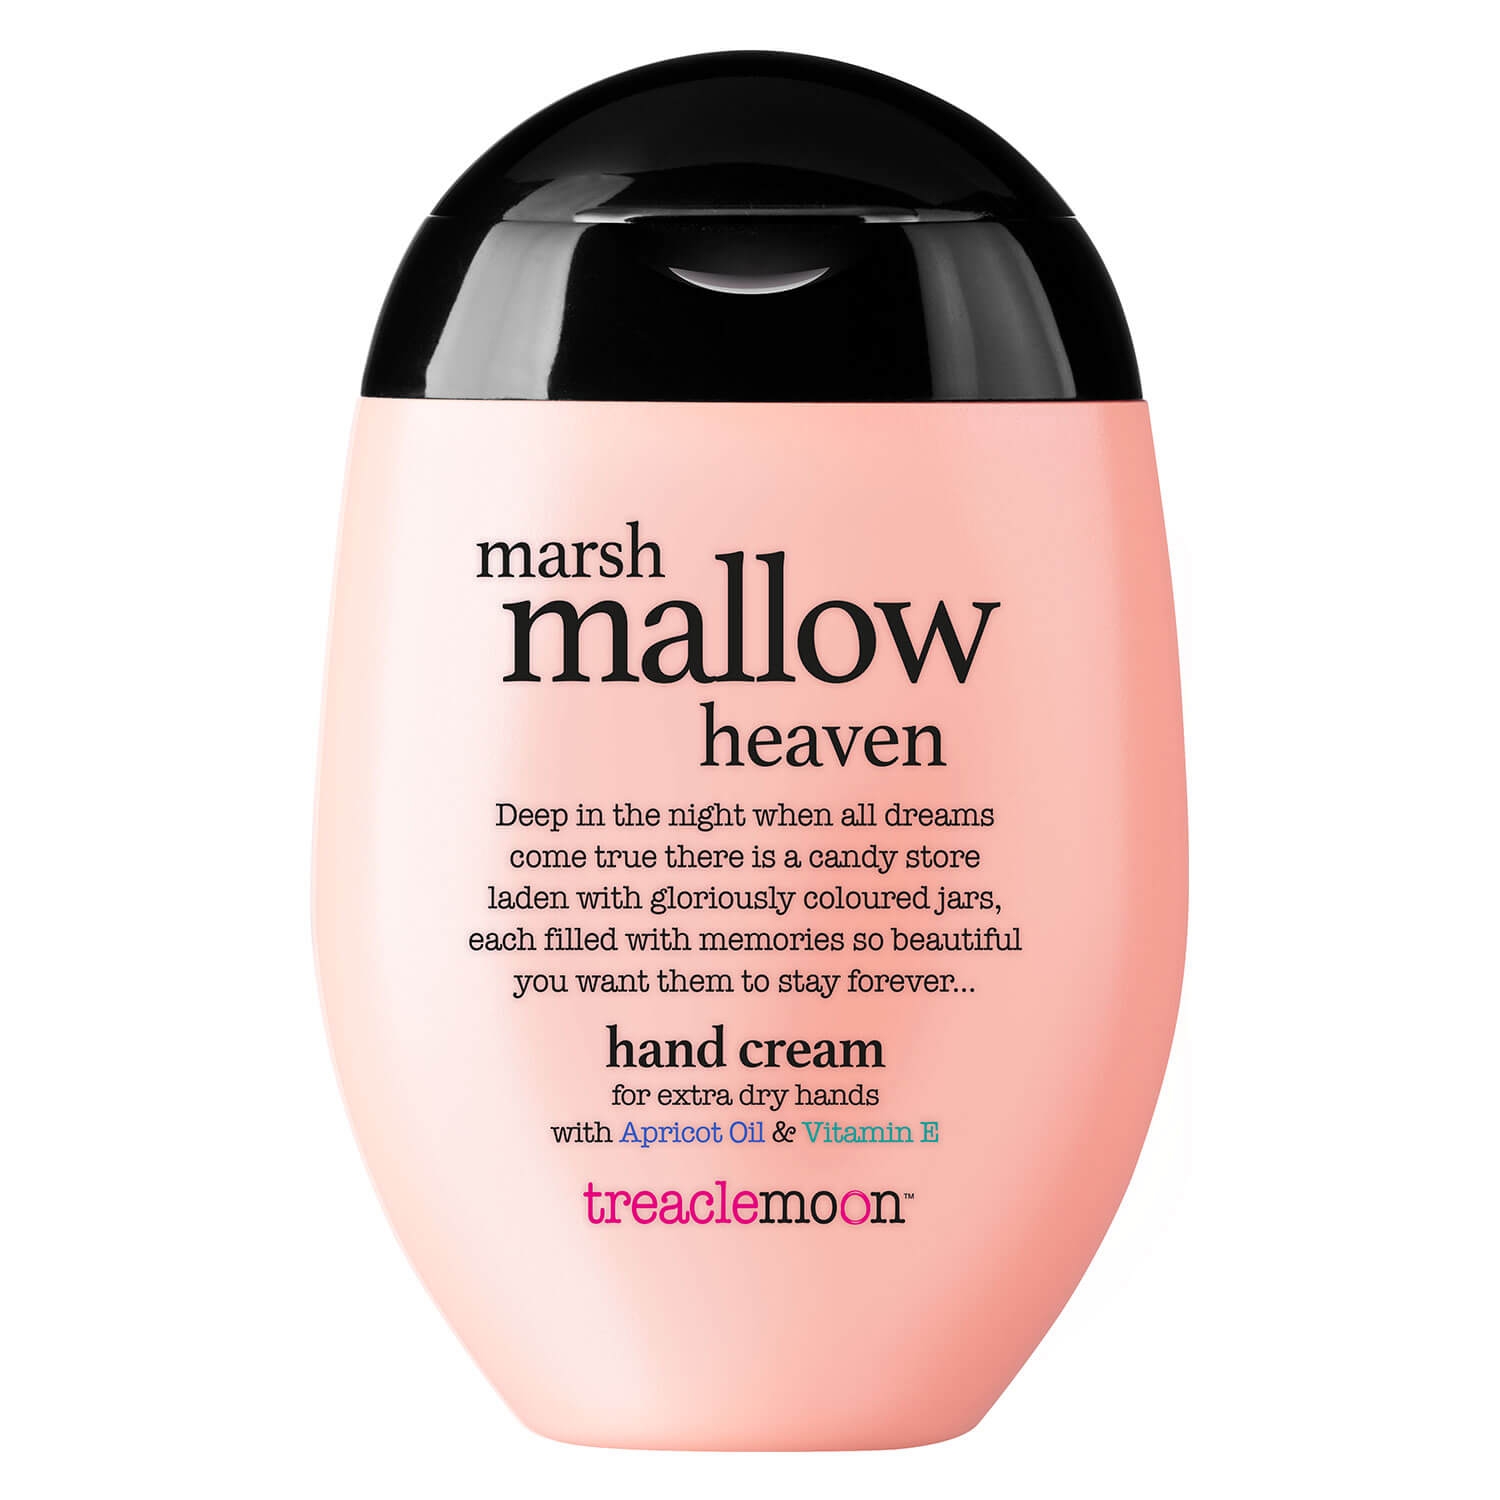 Produktbild von treaclemoon - marsh mallow heaven hand cream